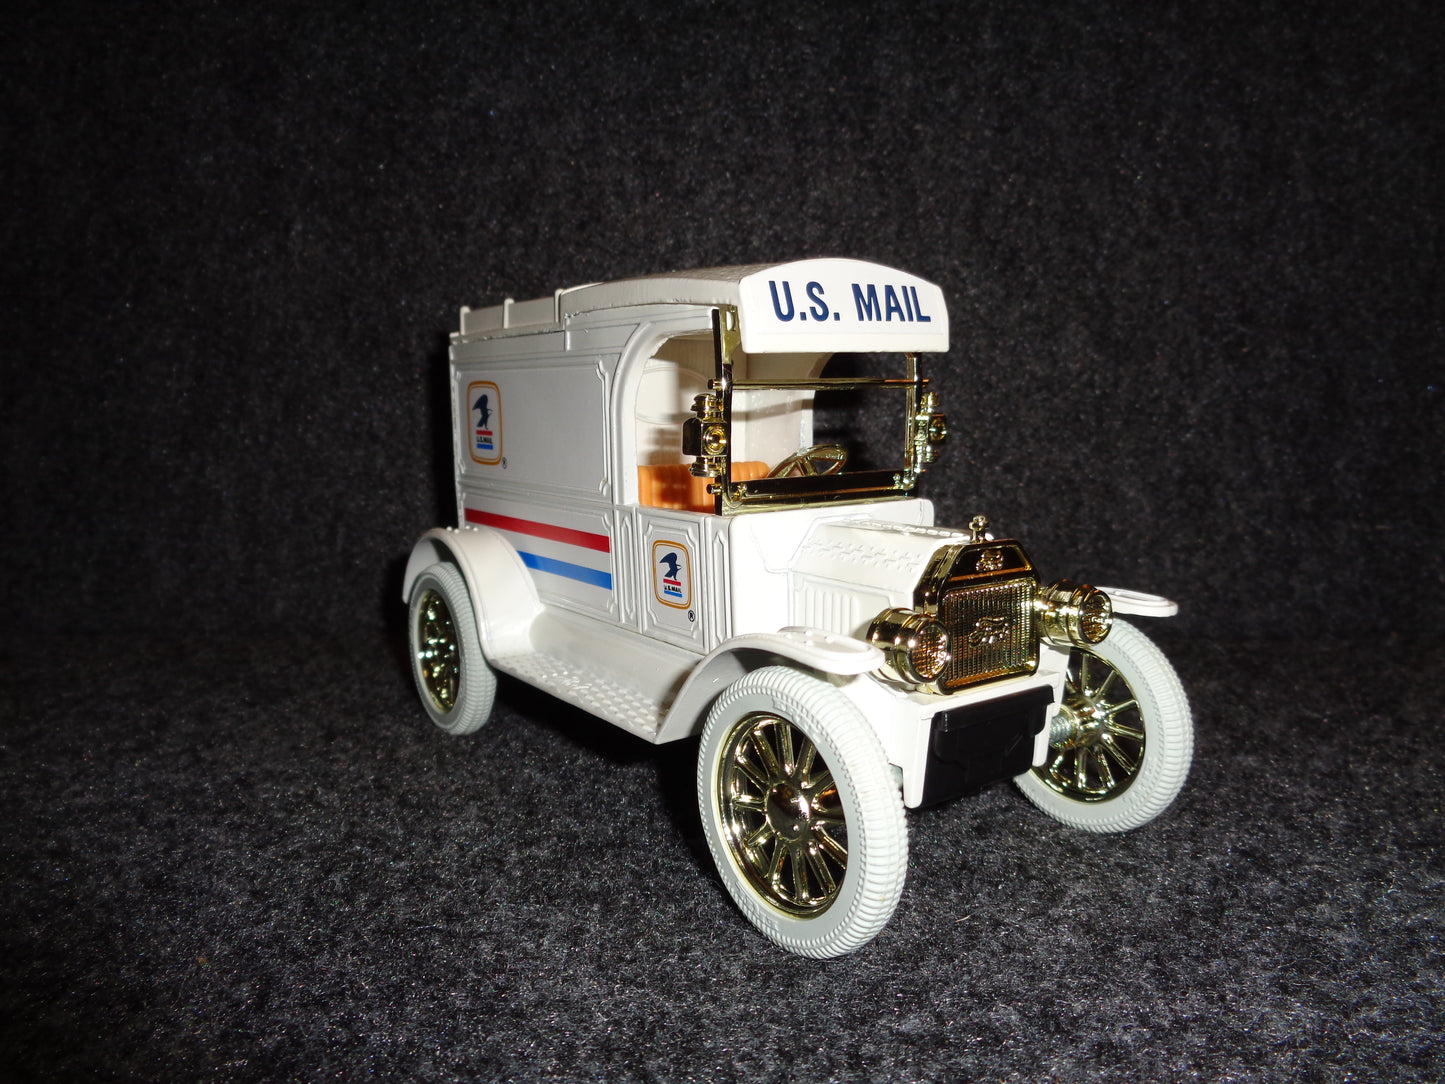 U.S. Mail 1913 Ford Model T Truck